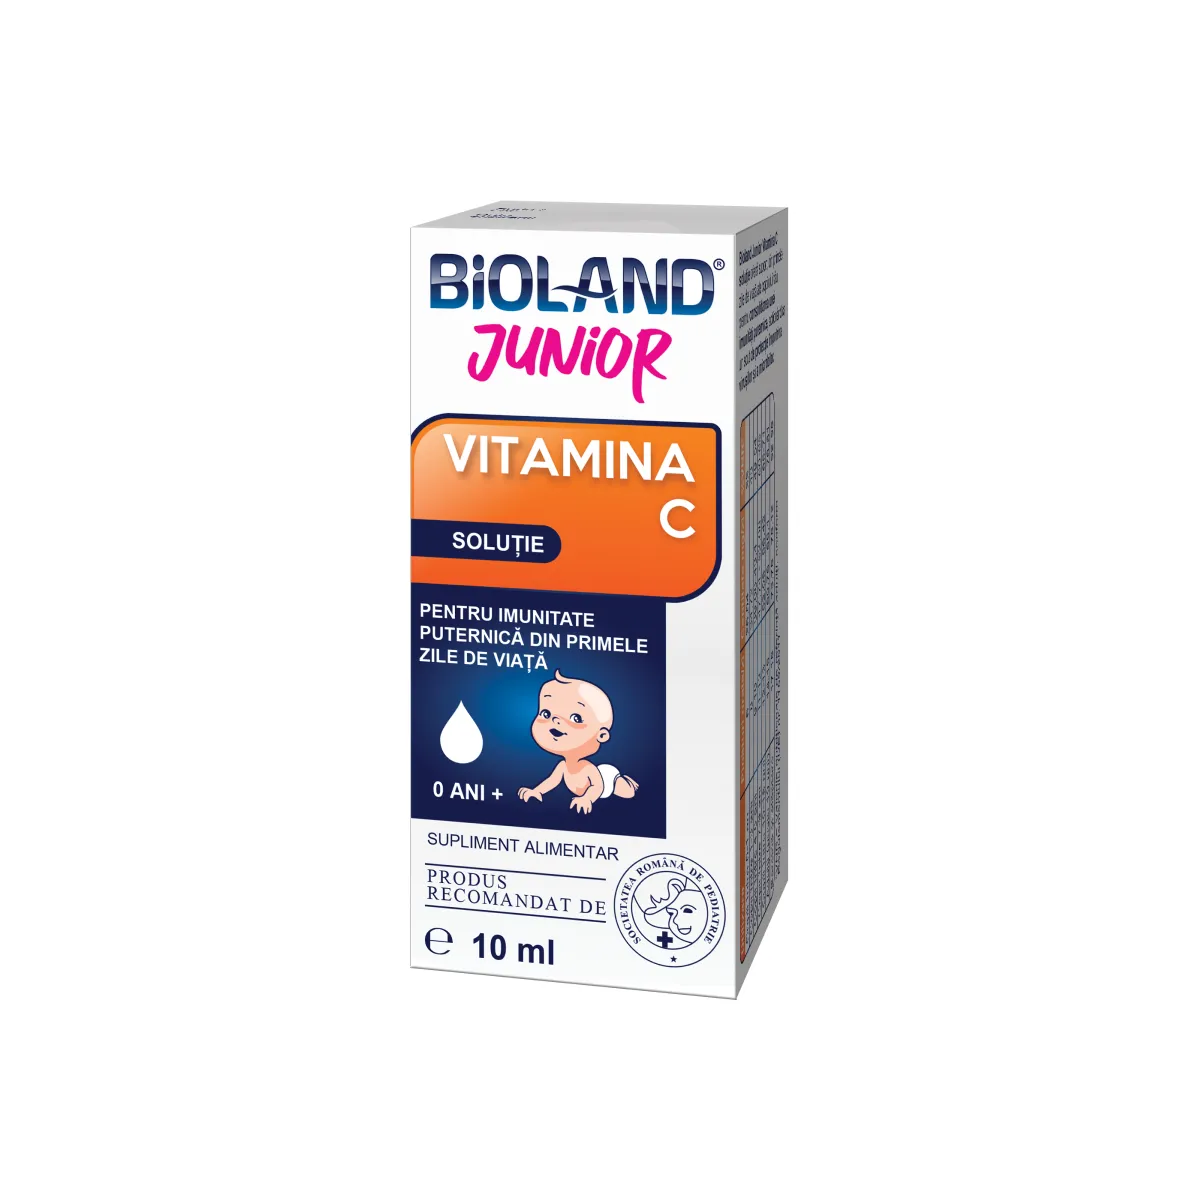 Vitamina C picaturi Bioland Junior, 10 ml, Biofarm